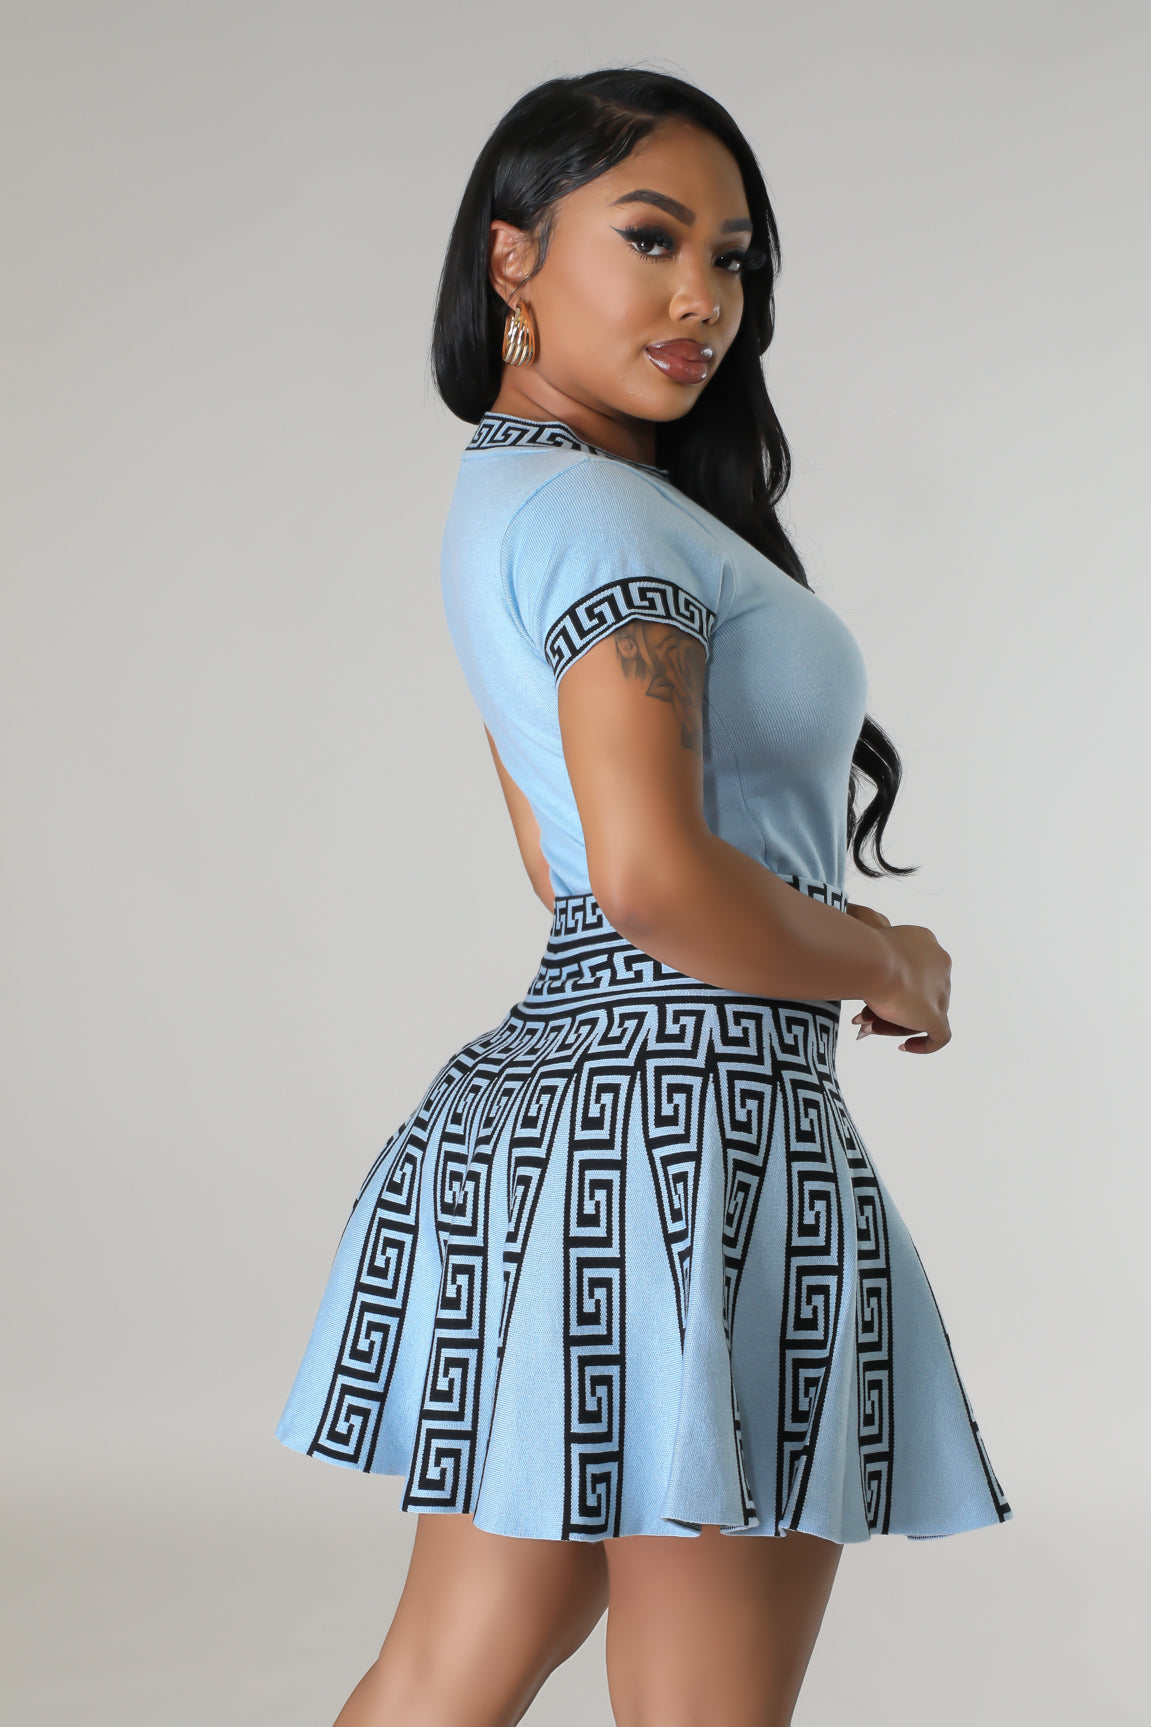 Classy Gurl Skirt Set